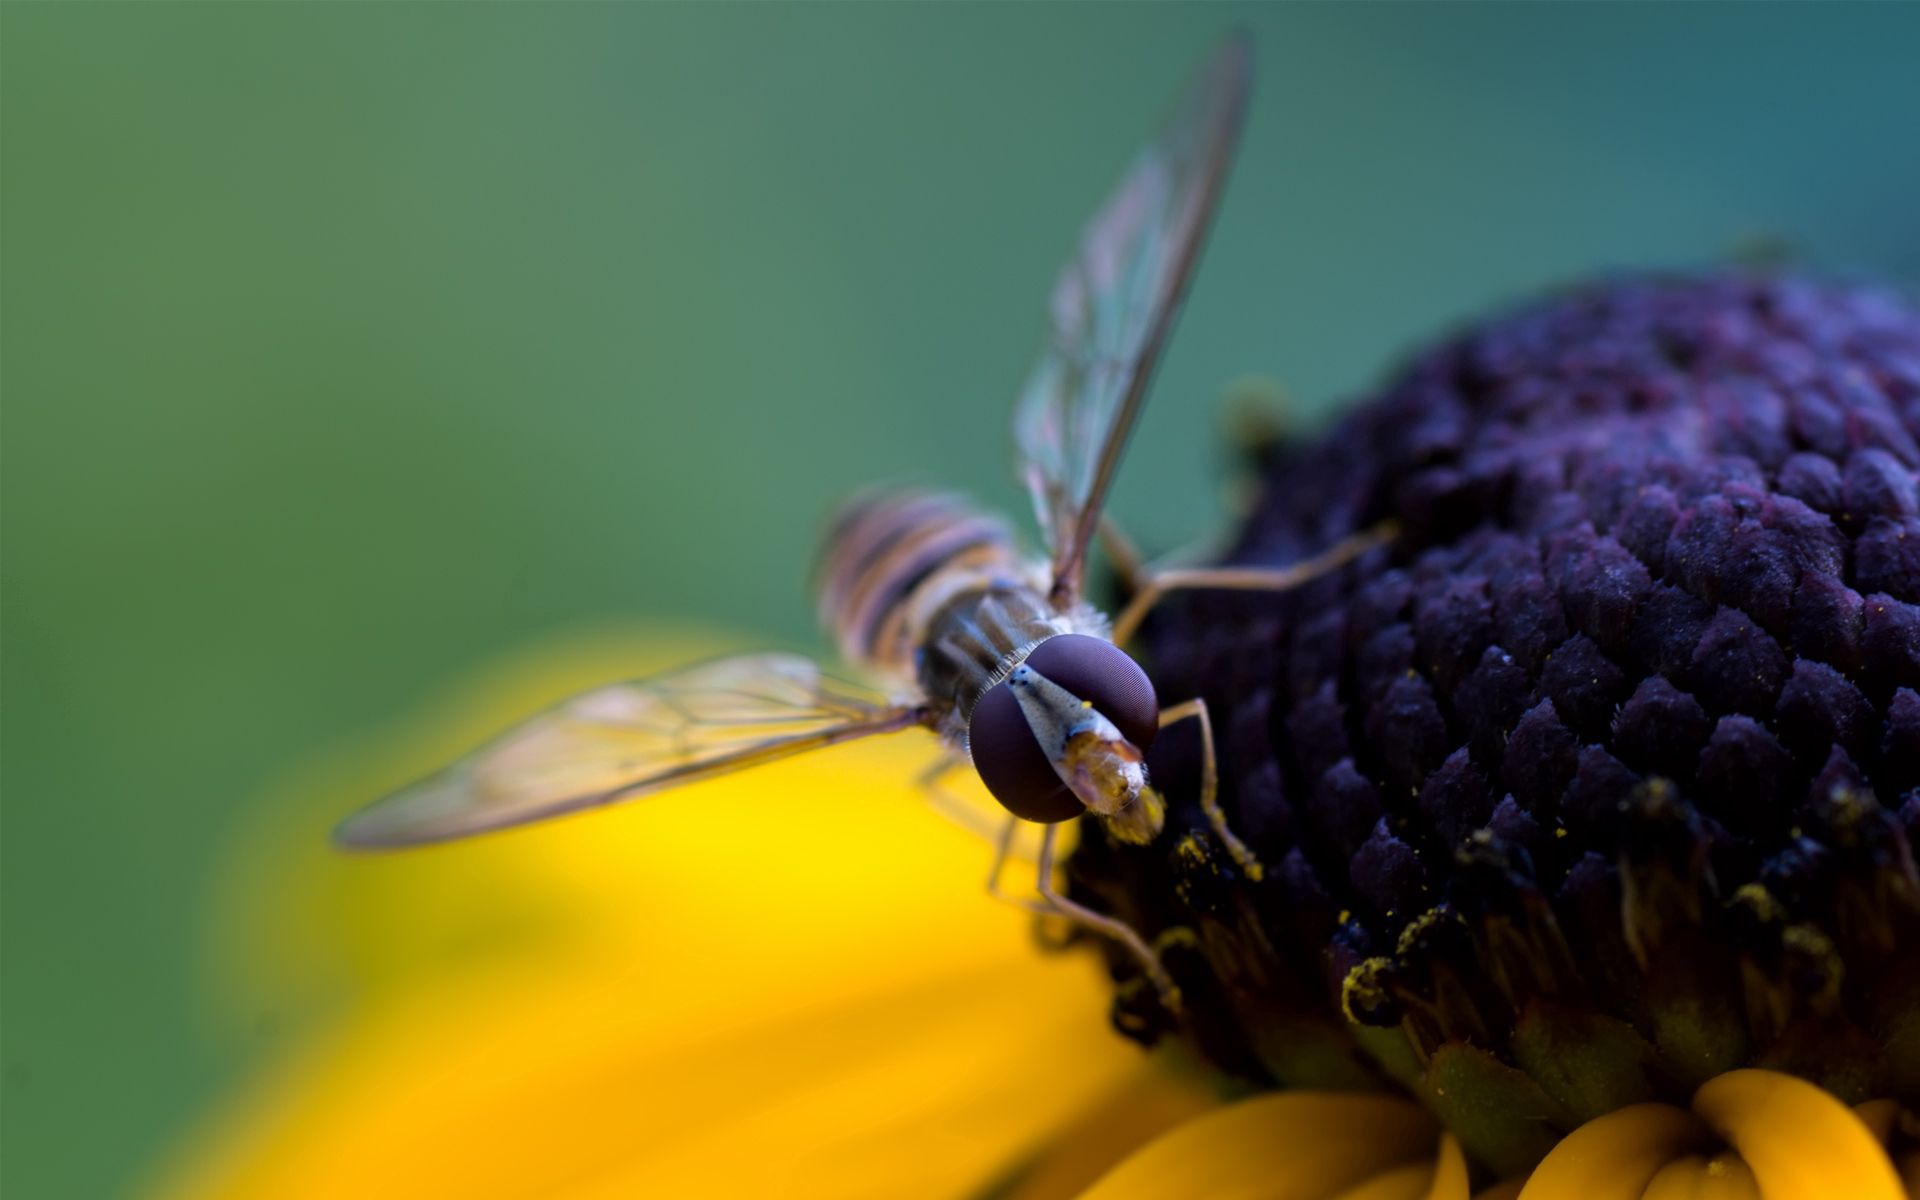 Скачать обои бесплатно Опыление, Лепестки, Пчела, Макро, Цветок картинка на рабочий стол ПК